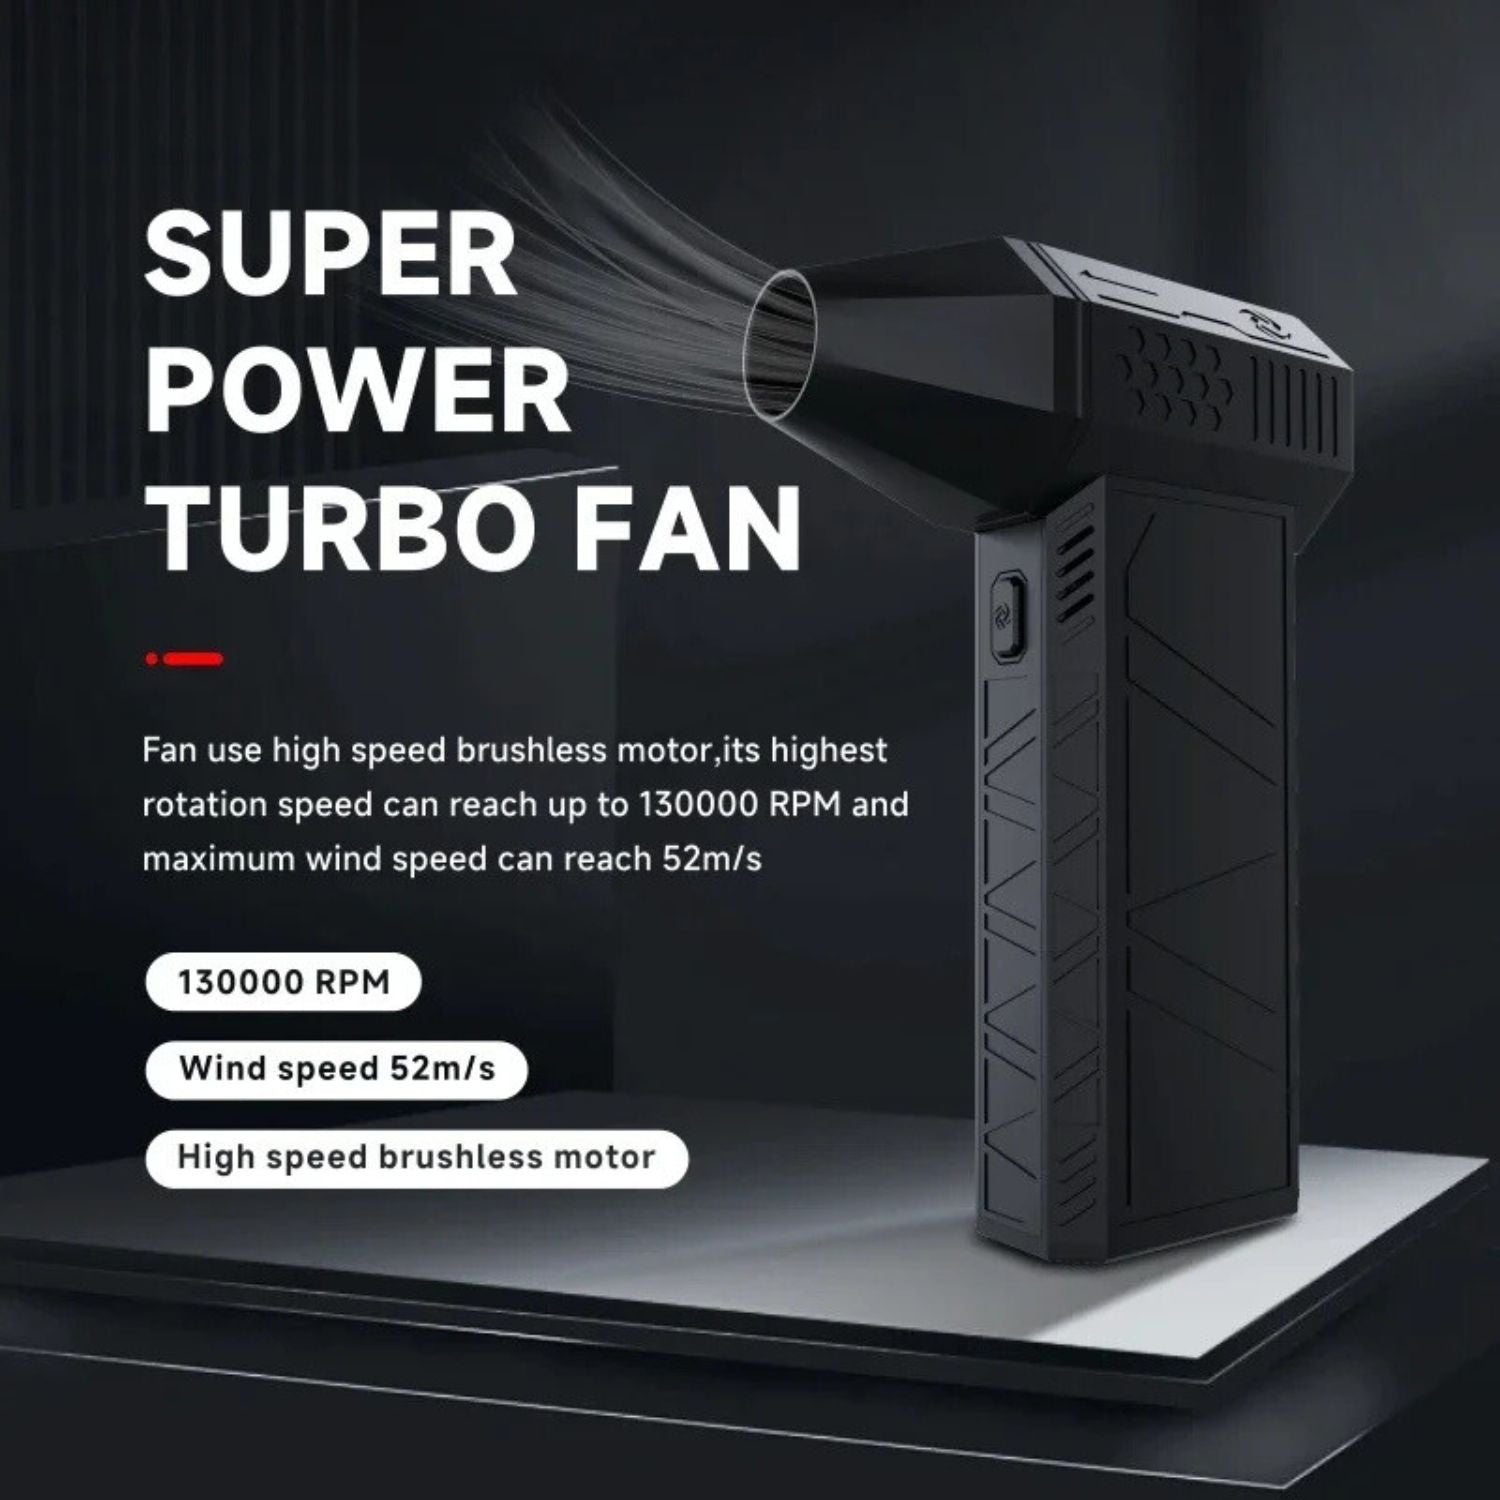 Super Power Turbo Fan